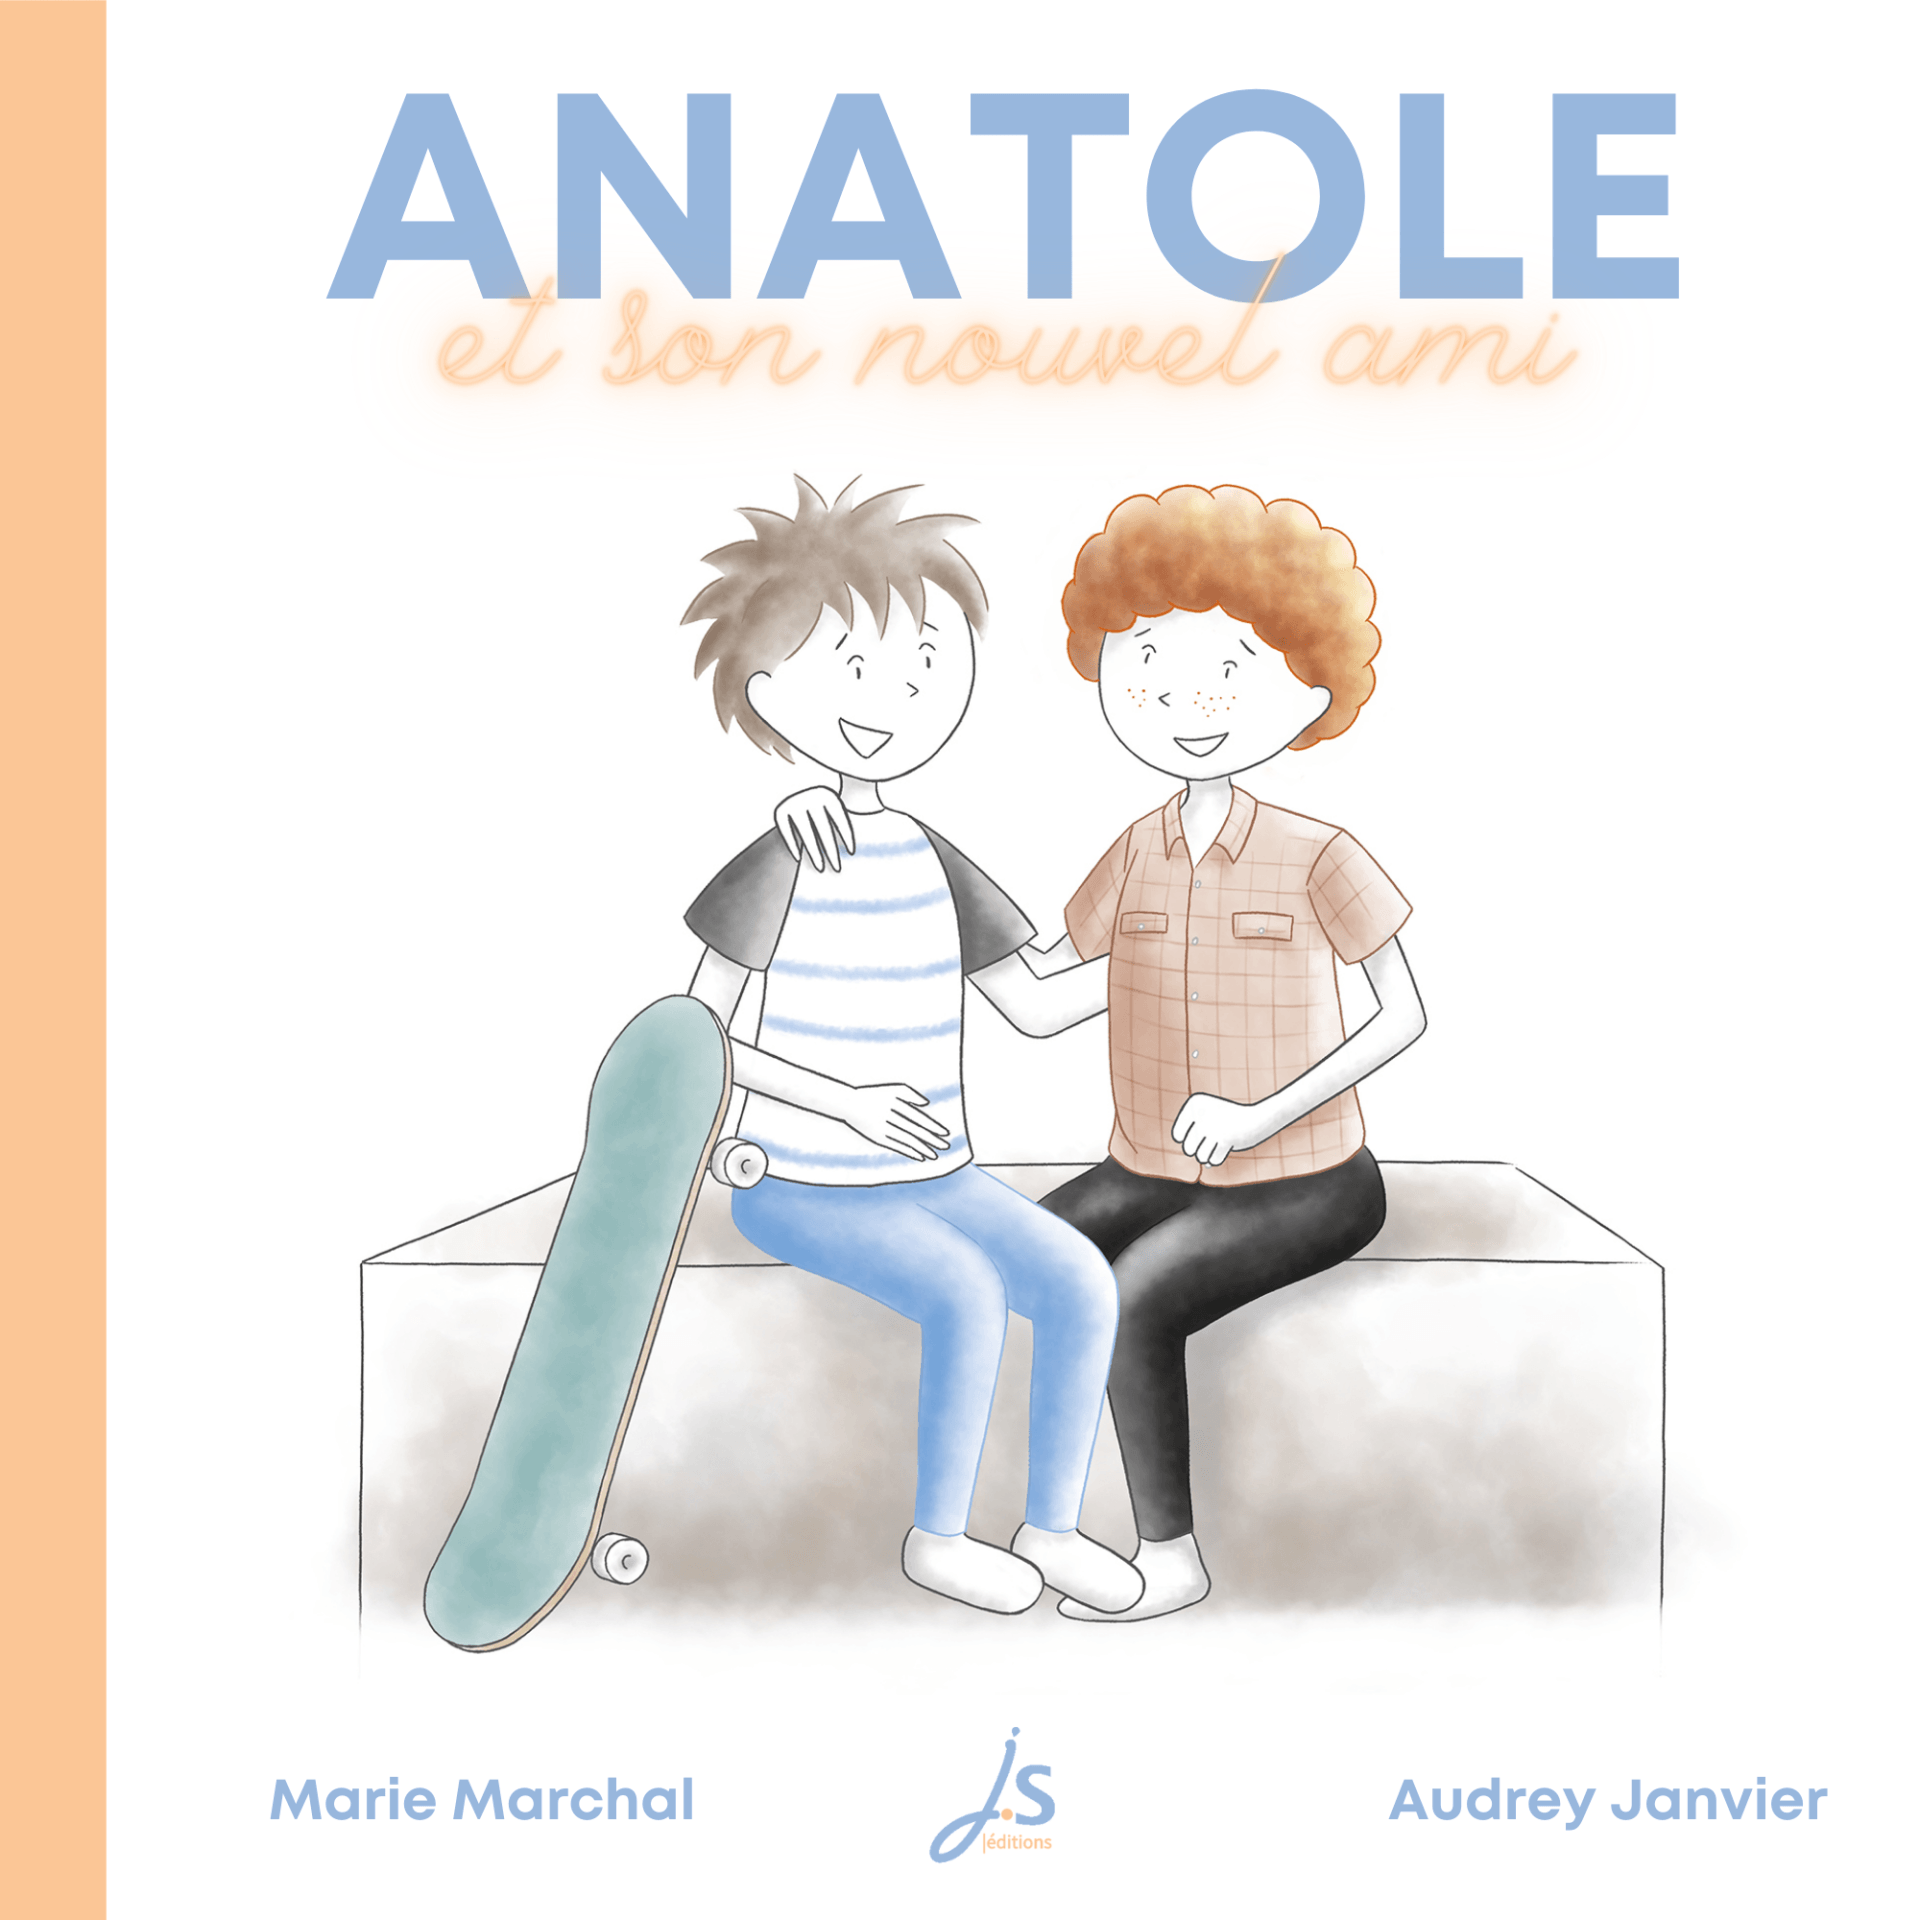 Sur la couverture, Anatol est assis à côté de son ami Arthur, un garçon roux aux cheveux courts bouclés. Anatole tient un skate board. Arthur est amputé d'une jambe.